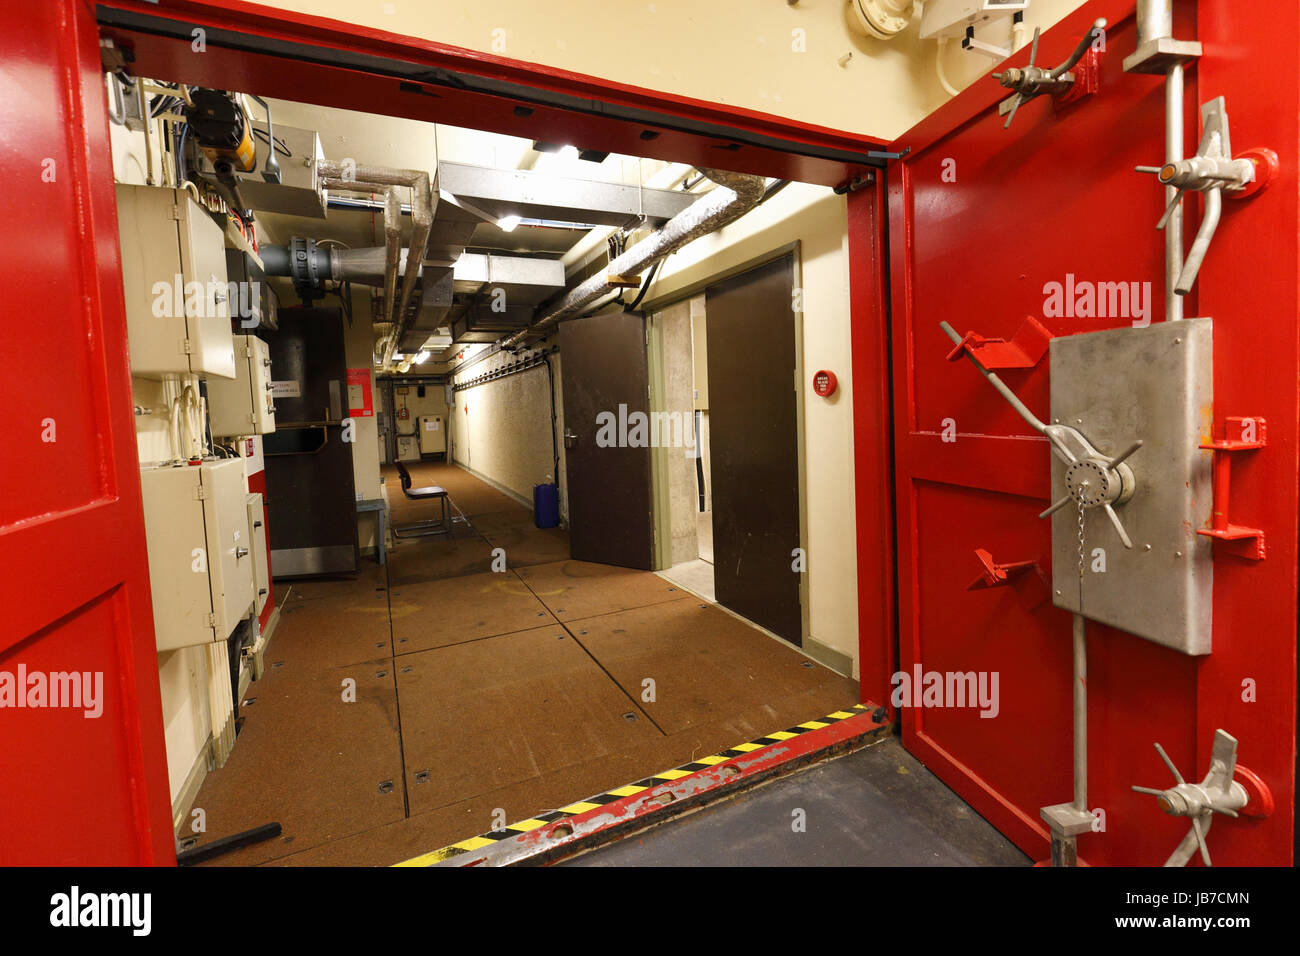 Metallo rosso blast porta in un bunker sotterraneo. Foto Stock